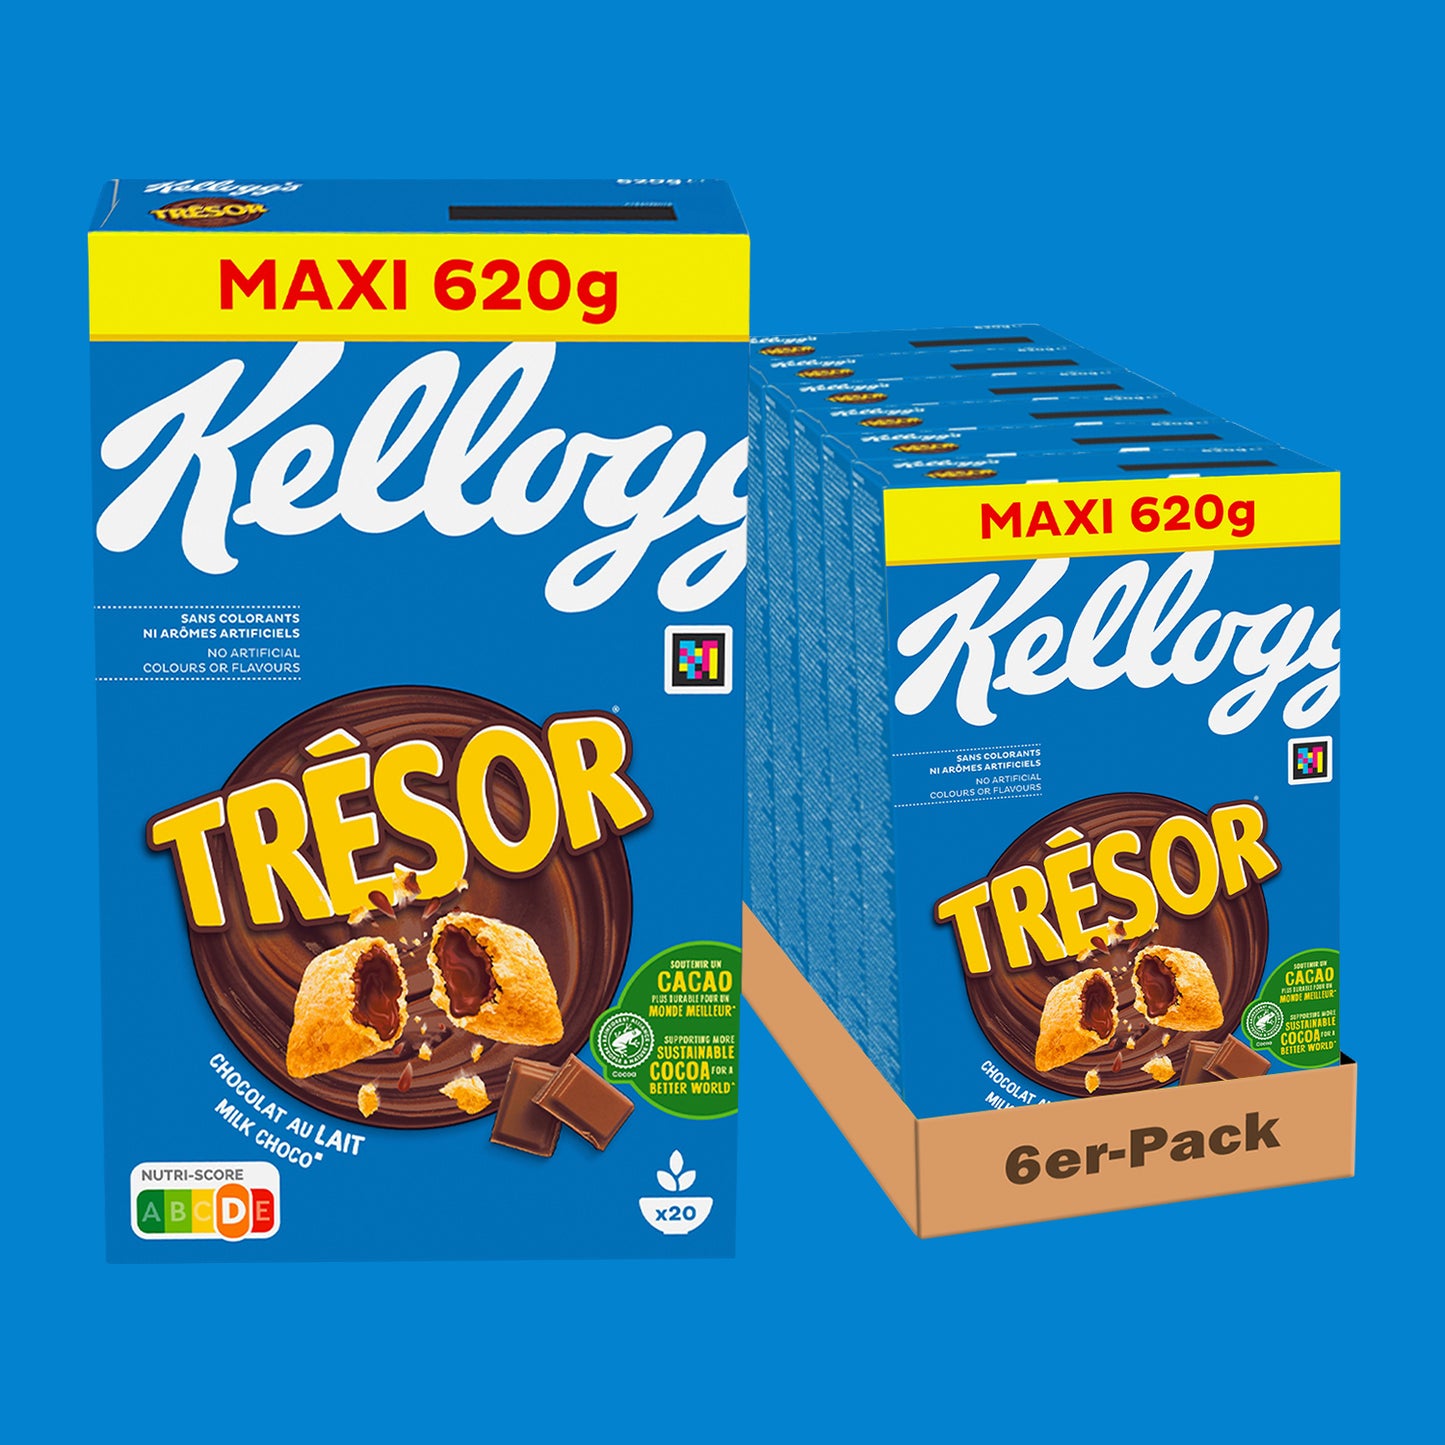 Kellogg's Tresor added a new photo. - Kellogg's Tresor